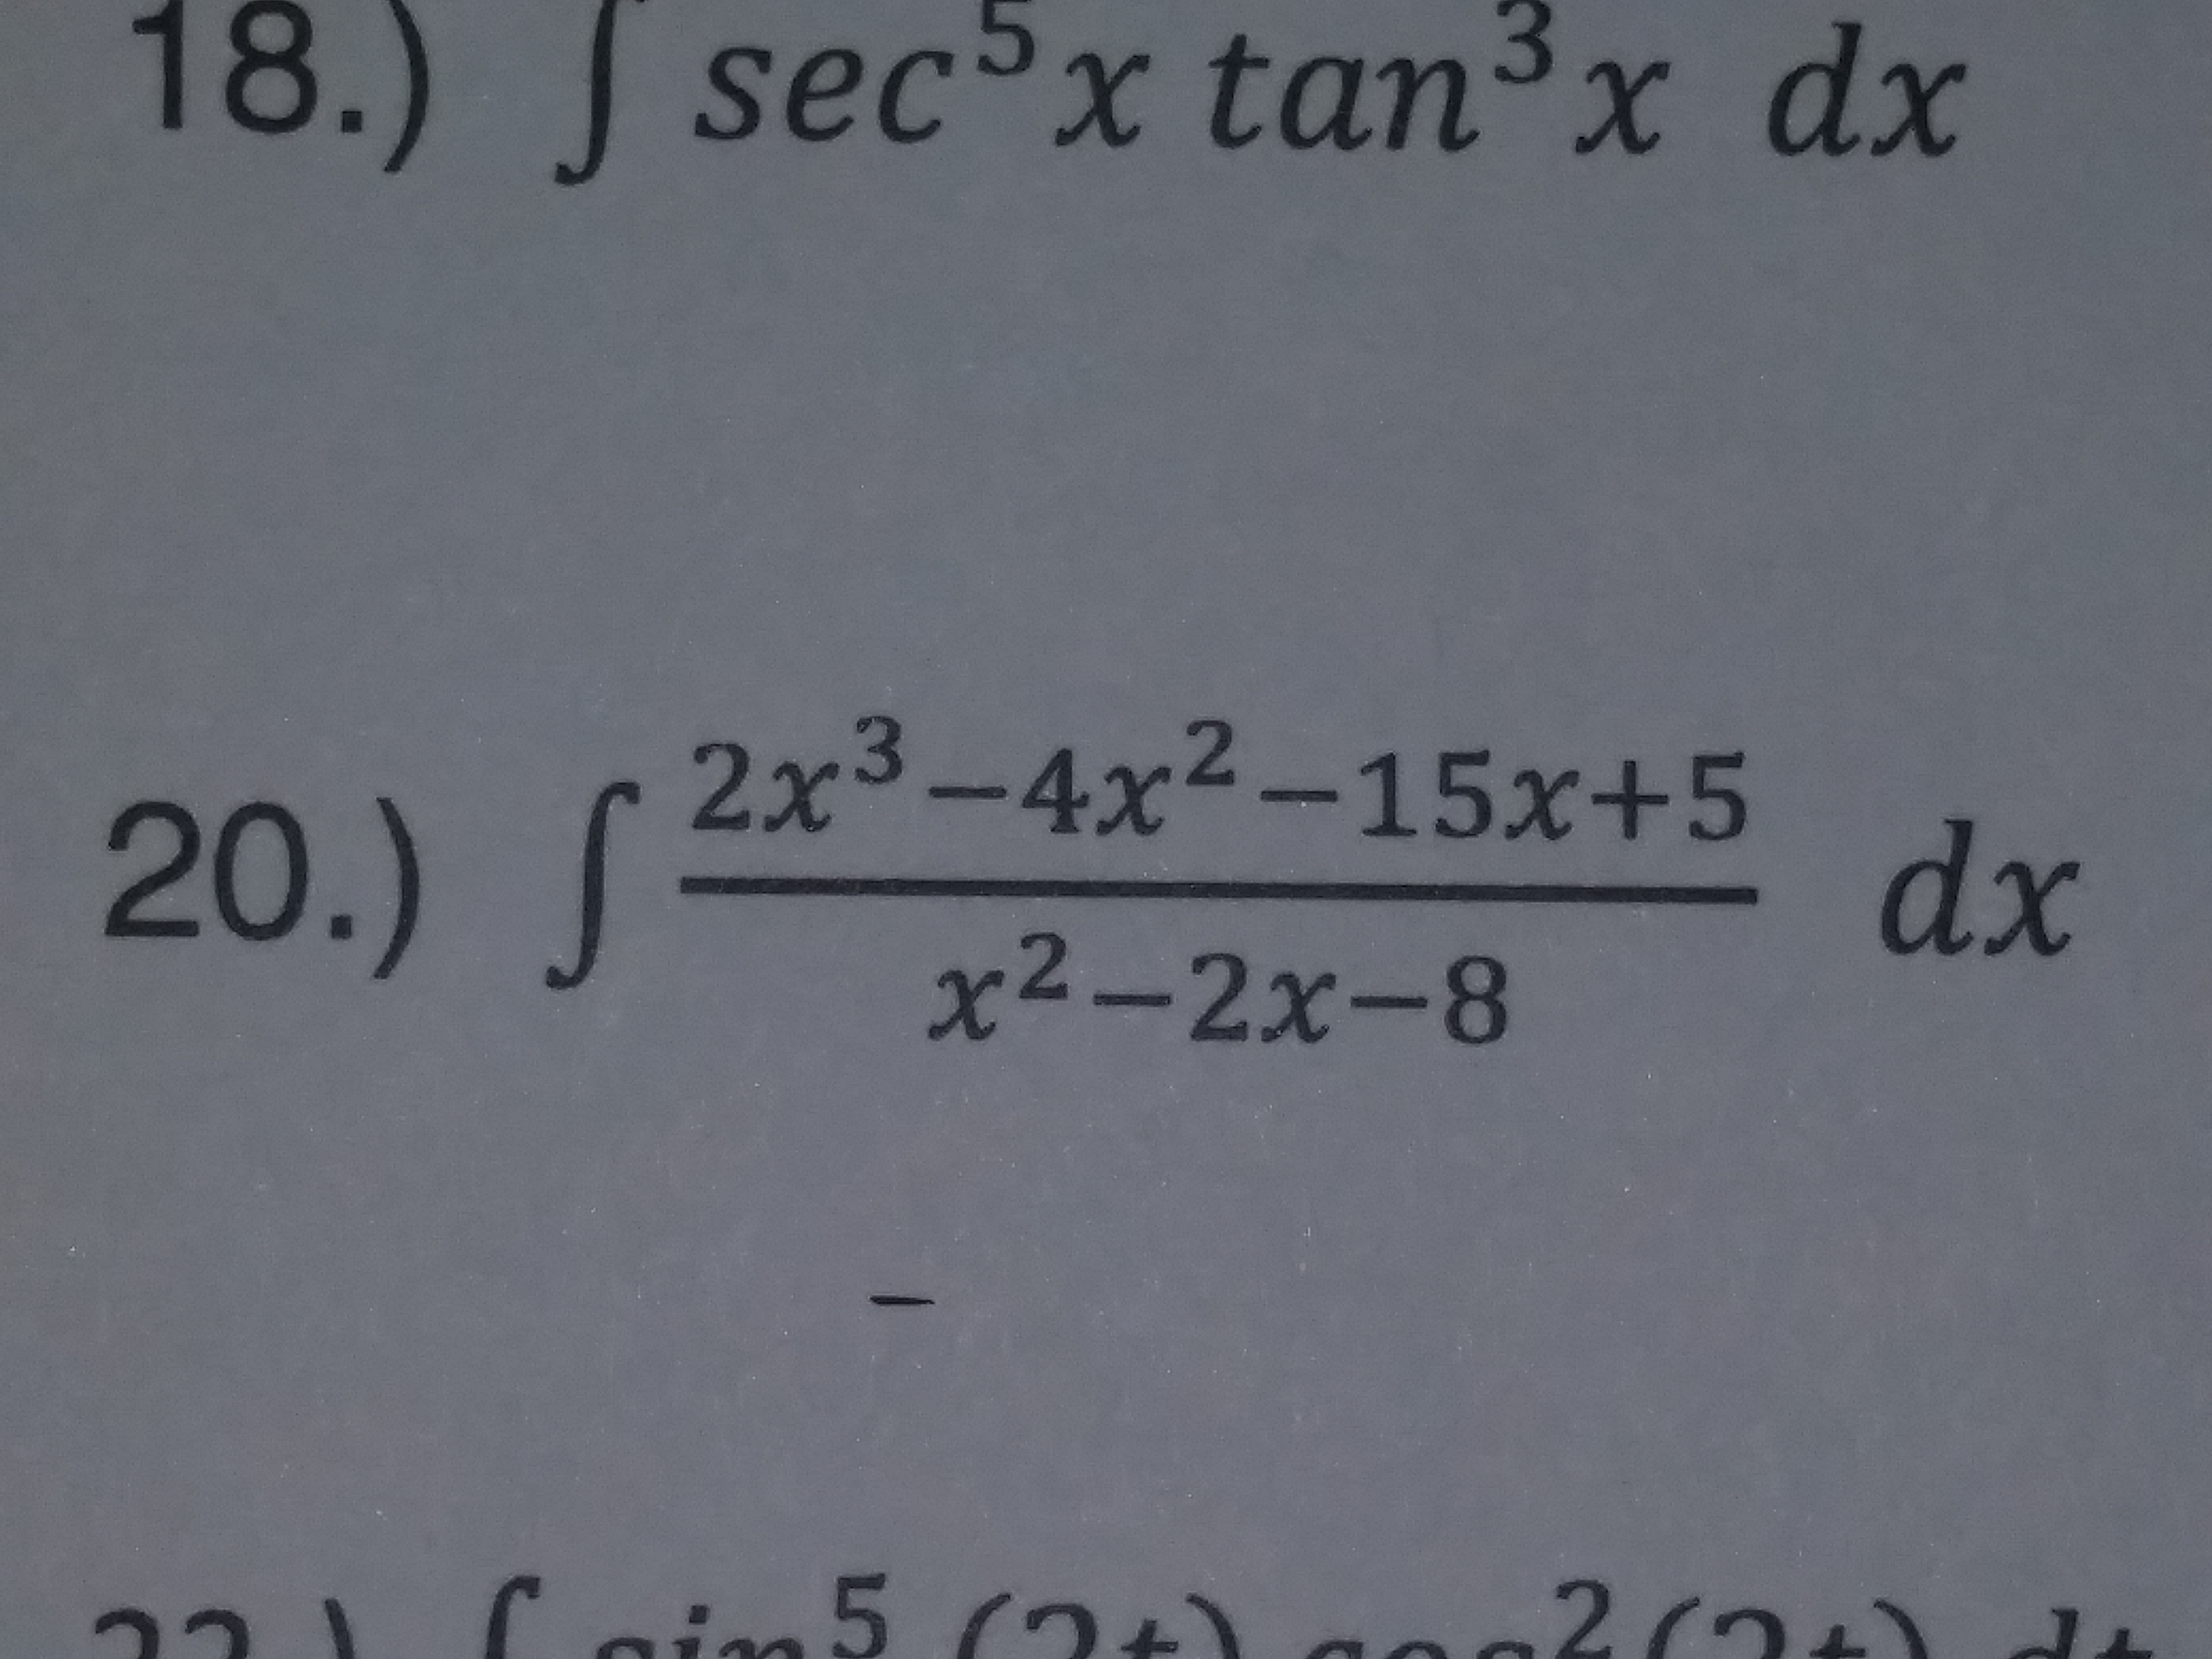 18.) sec5x tan3x dx
2x3-4x2-15x+5
x2-2x-8
20.)
dx
